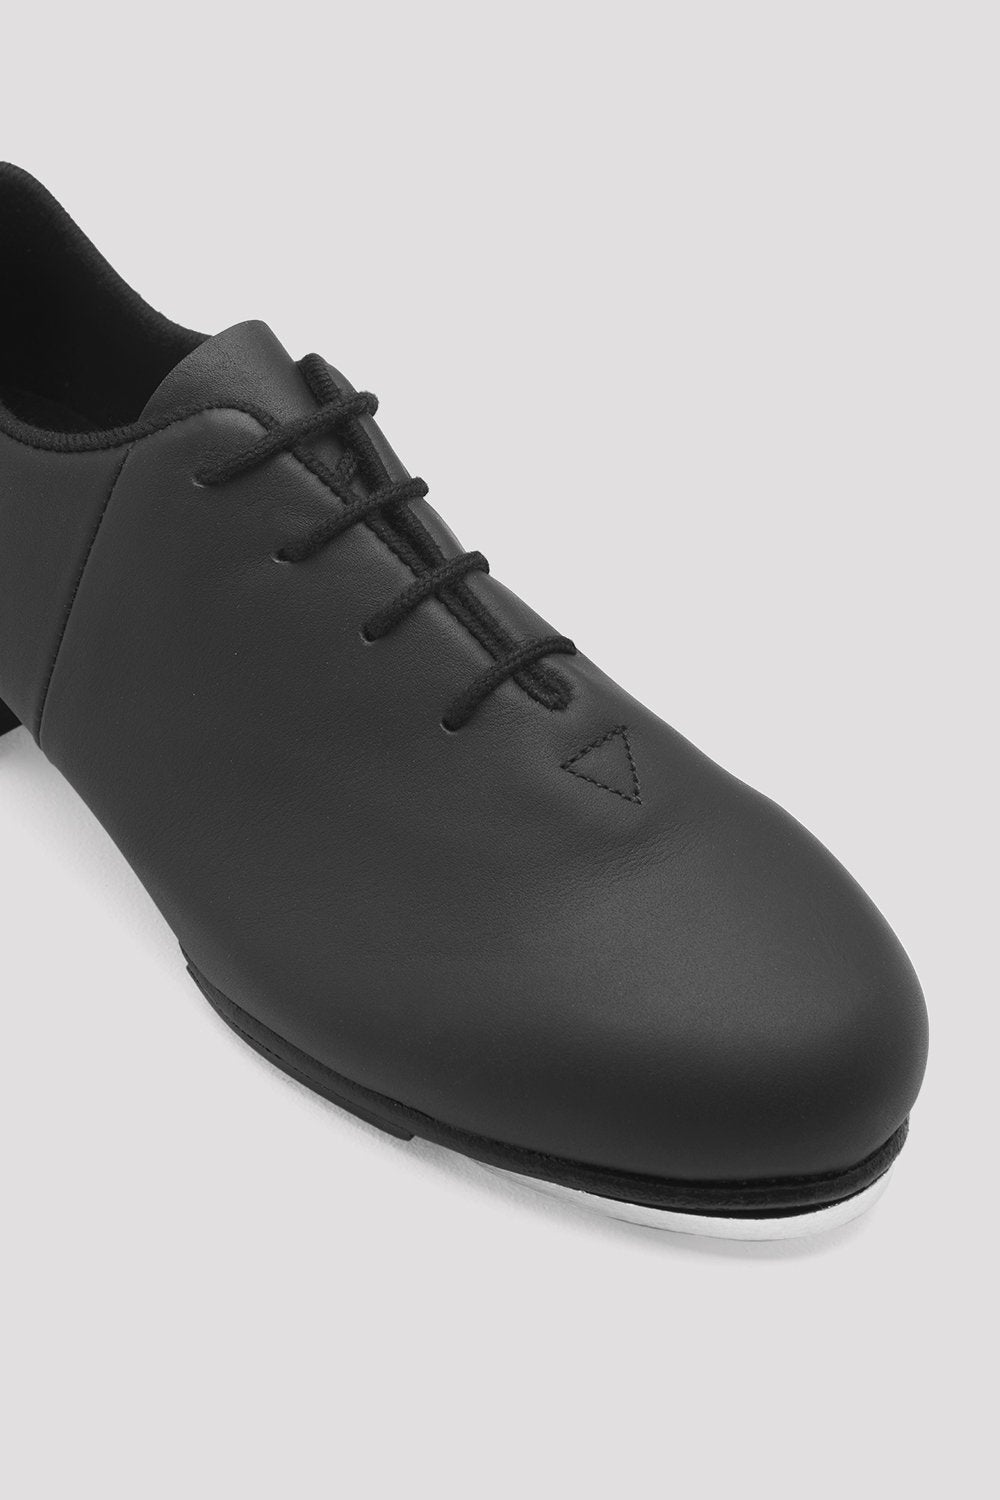 BLOCH - SO388L - Tap-Flex Leather Tap Shoes - Black - DanceLine